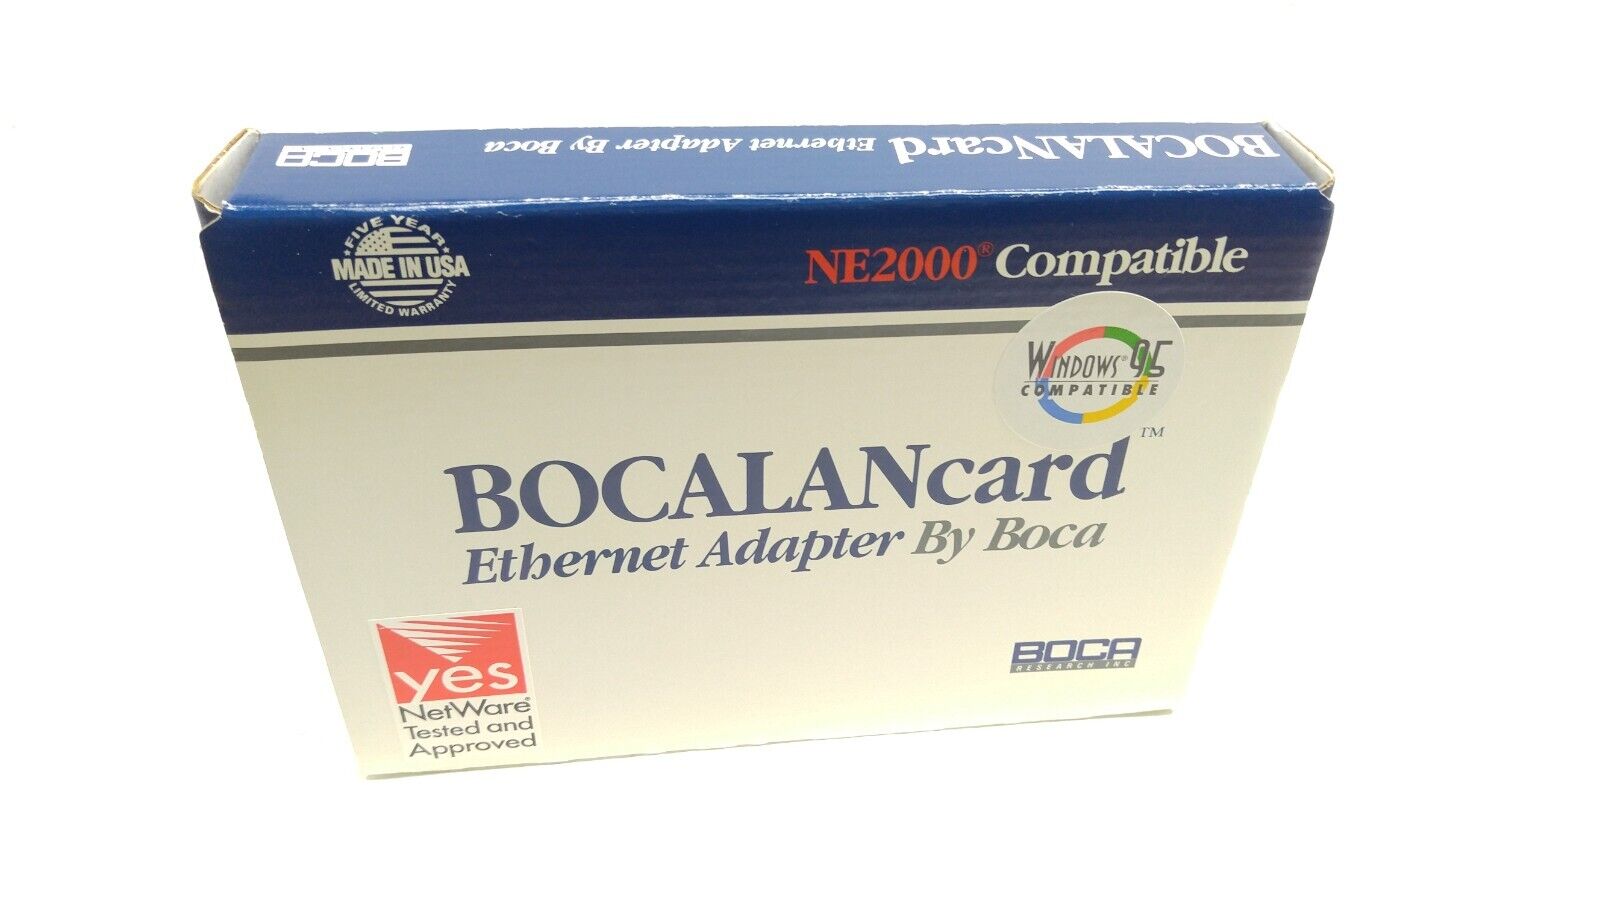 VINTAGE BOCALANcard Ethernet Adapter by boca BE2000/T